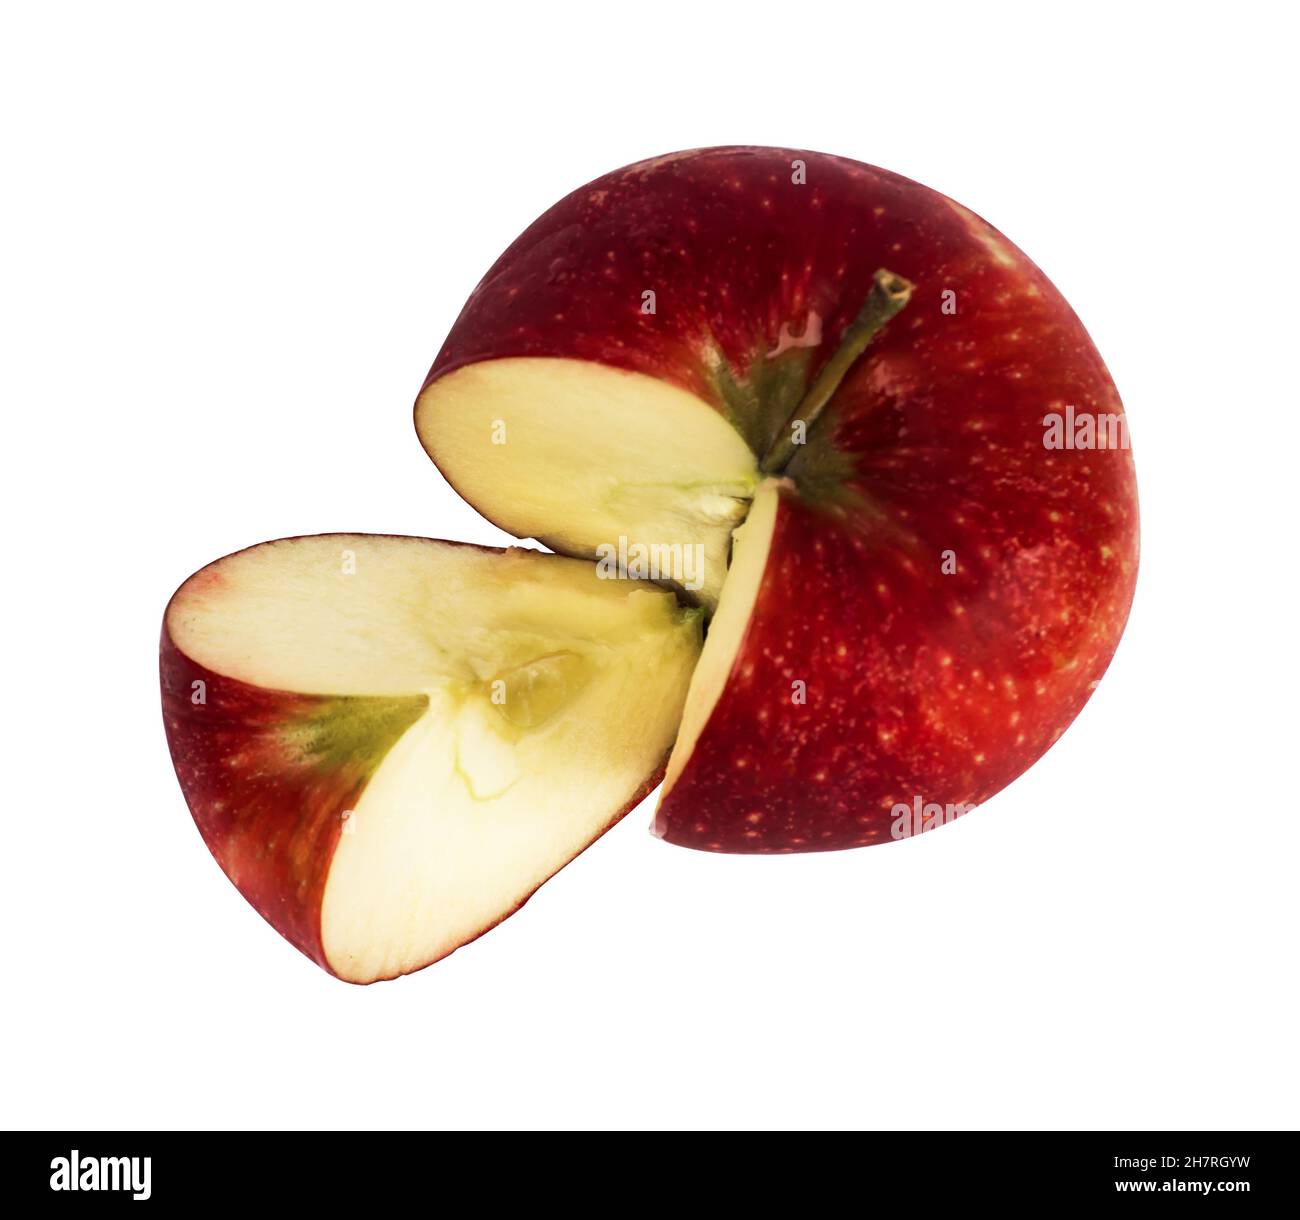 Fruit mûr de pomme, une partie est coupée, sur fond blanc Banque D'Images